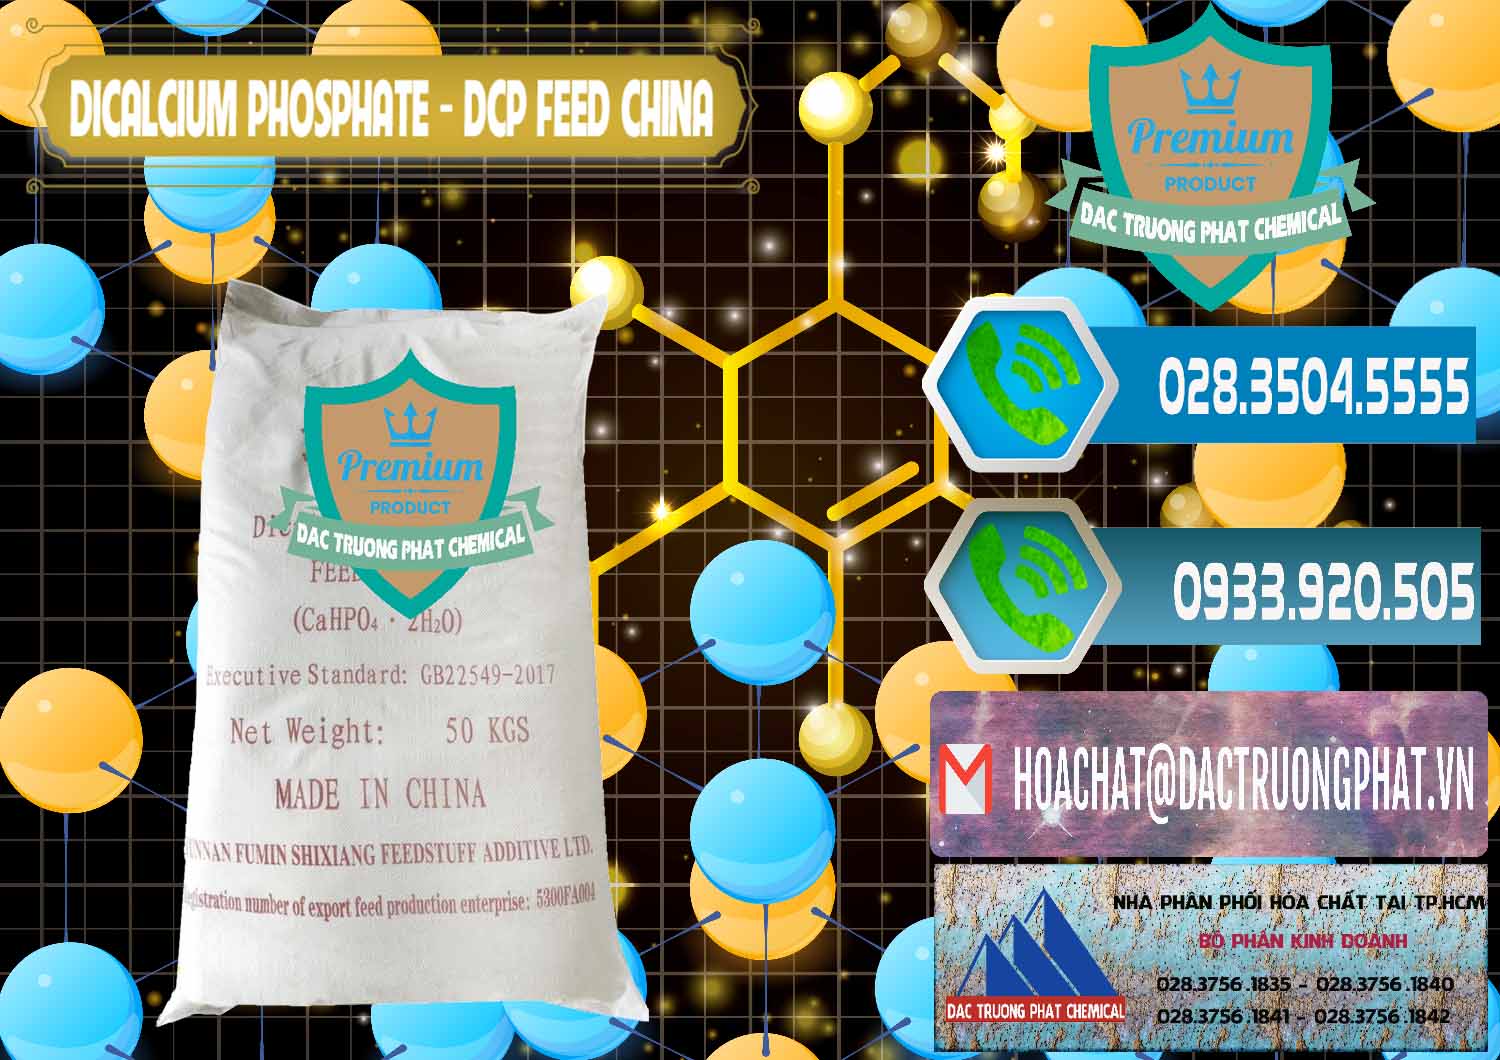 Bán - cung cấp Dicalcium Phosphate - DCP Feed Grade Trung Quốc China - 0296 - Cty phân phối & cung ứng hóa chất tại TP.HCM - congtyhoachat.net